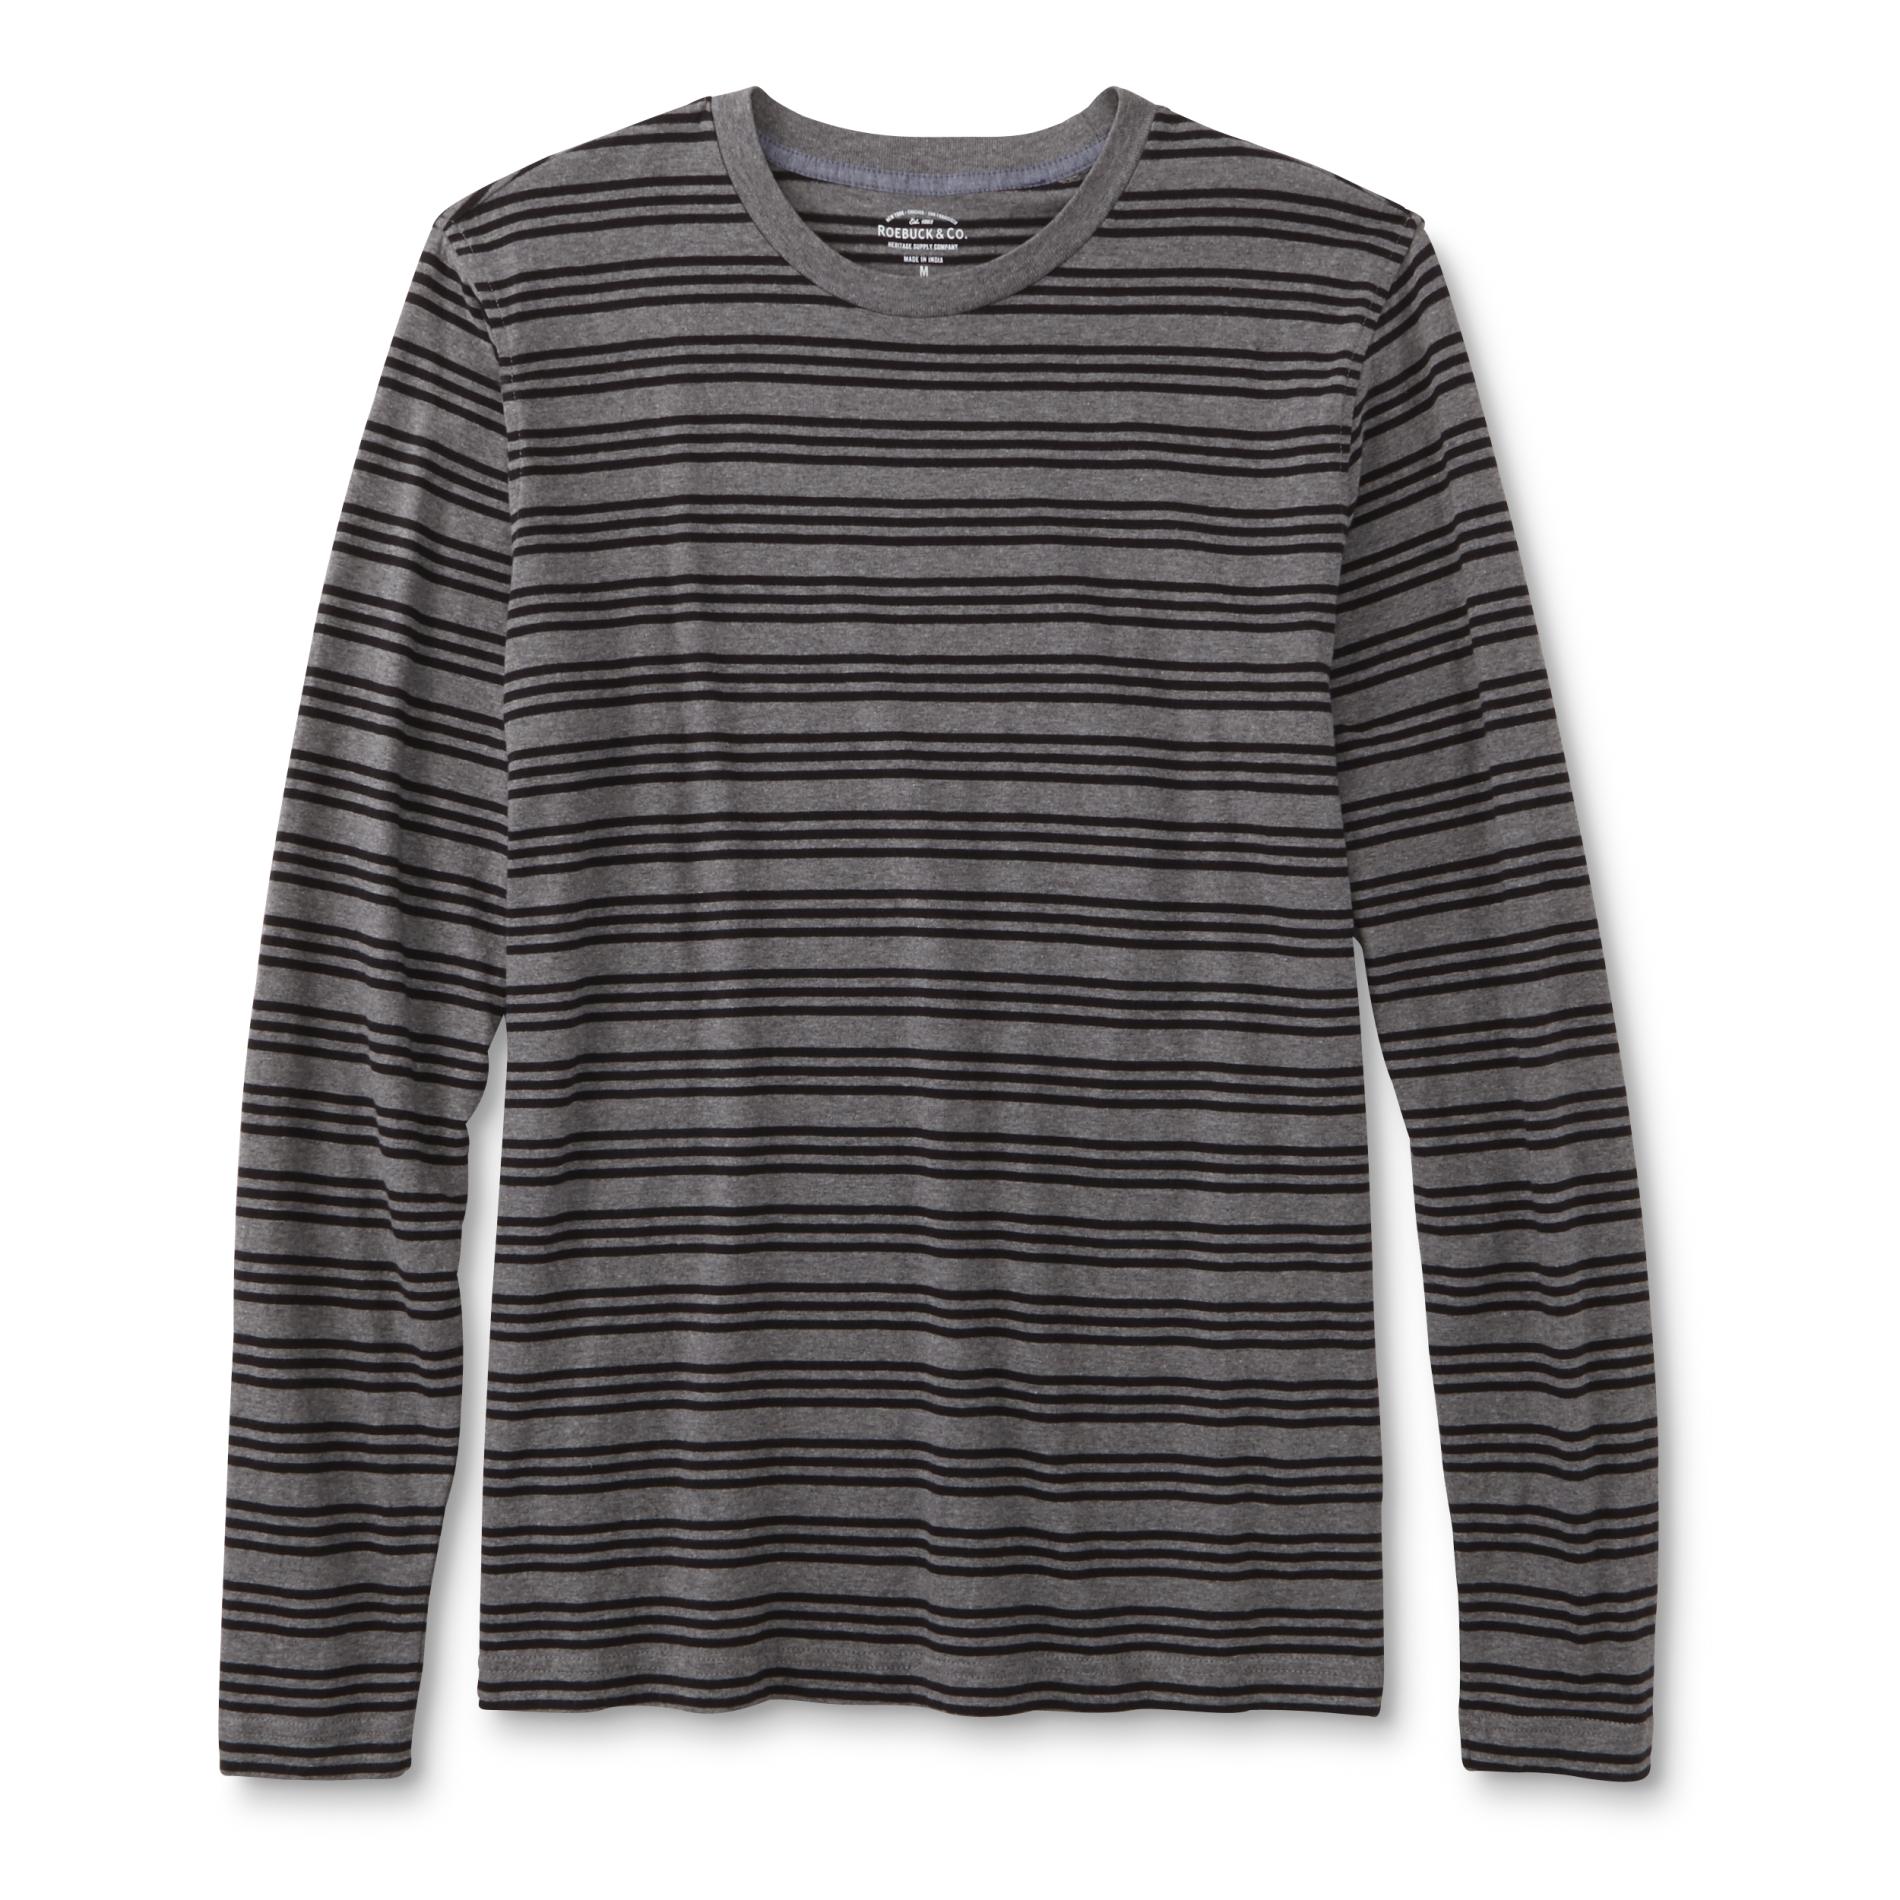 Roebuck & Co. Young Men's Long-Sleeve T-Shirt - Striped